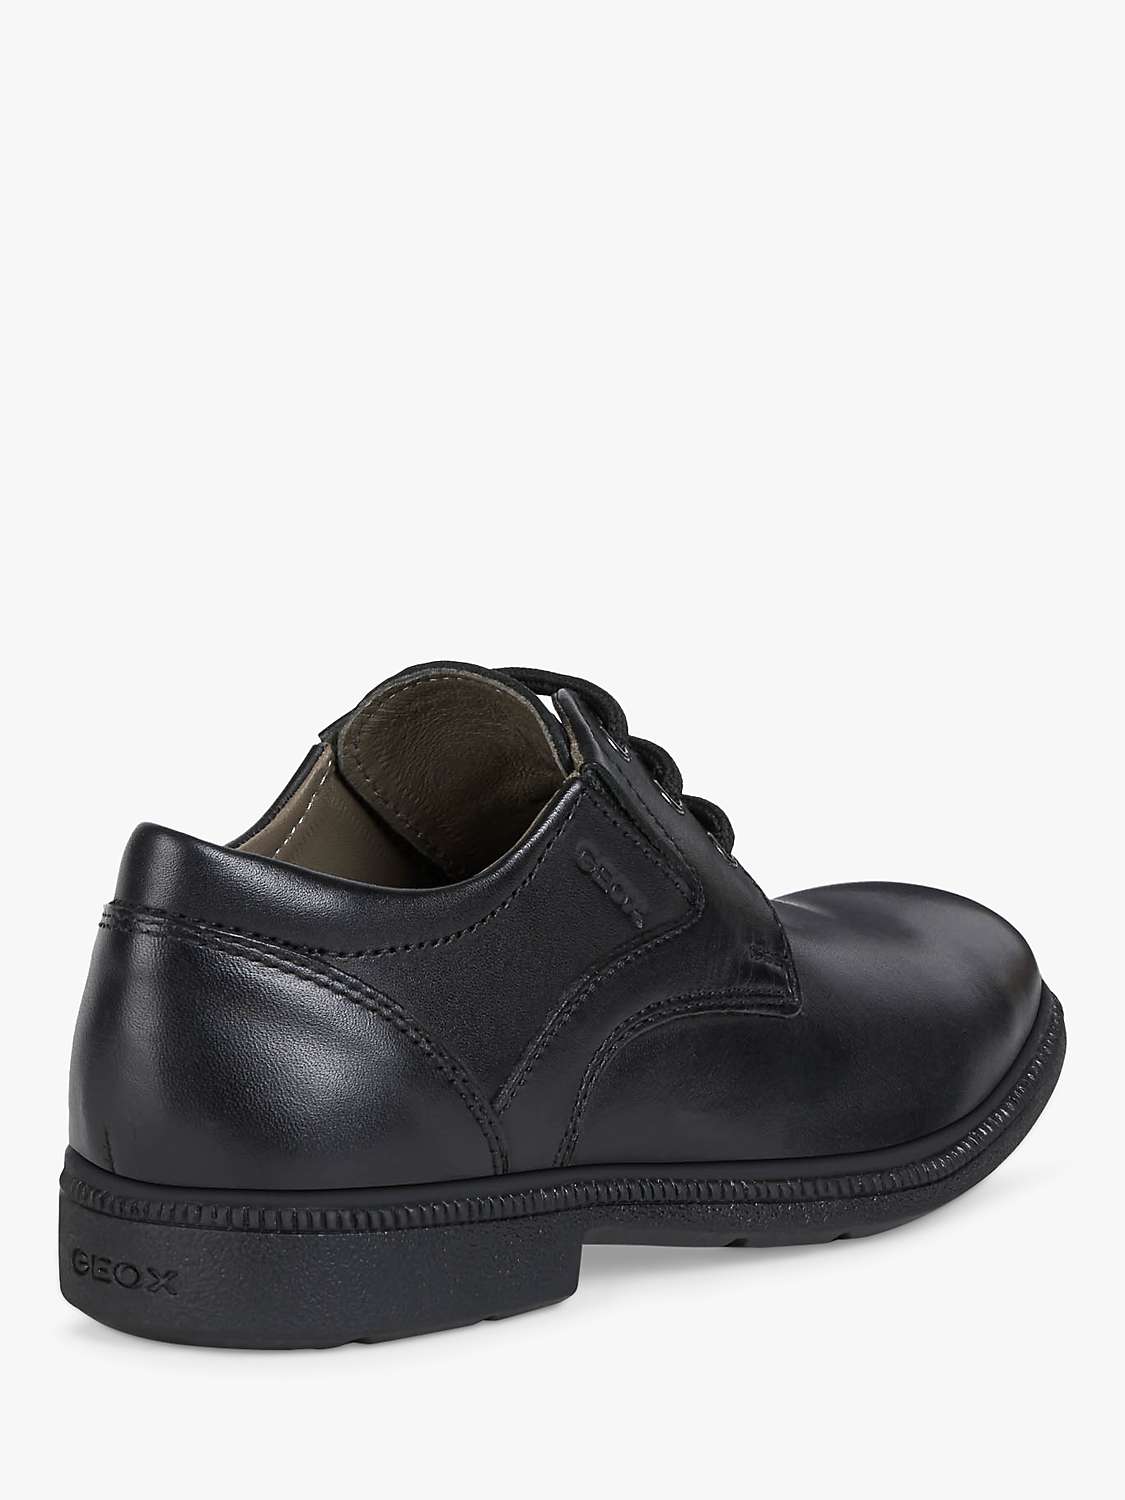 Buy Geox Kids' Federico School Shoes, Black Online at johnlewis.com